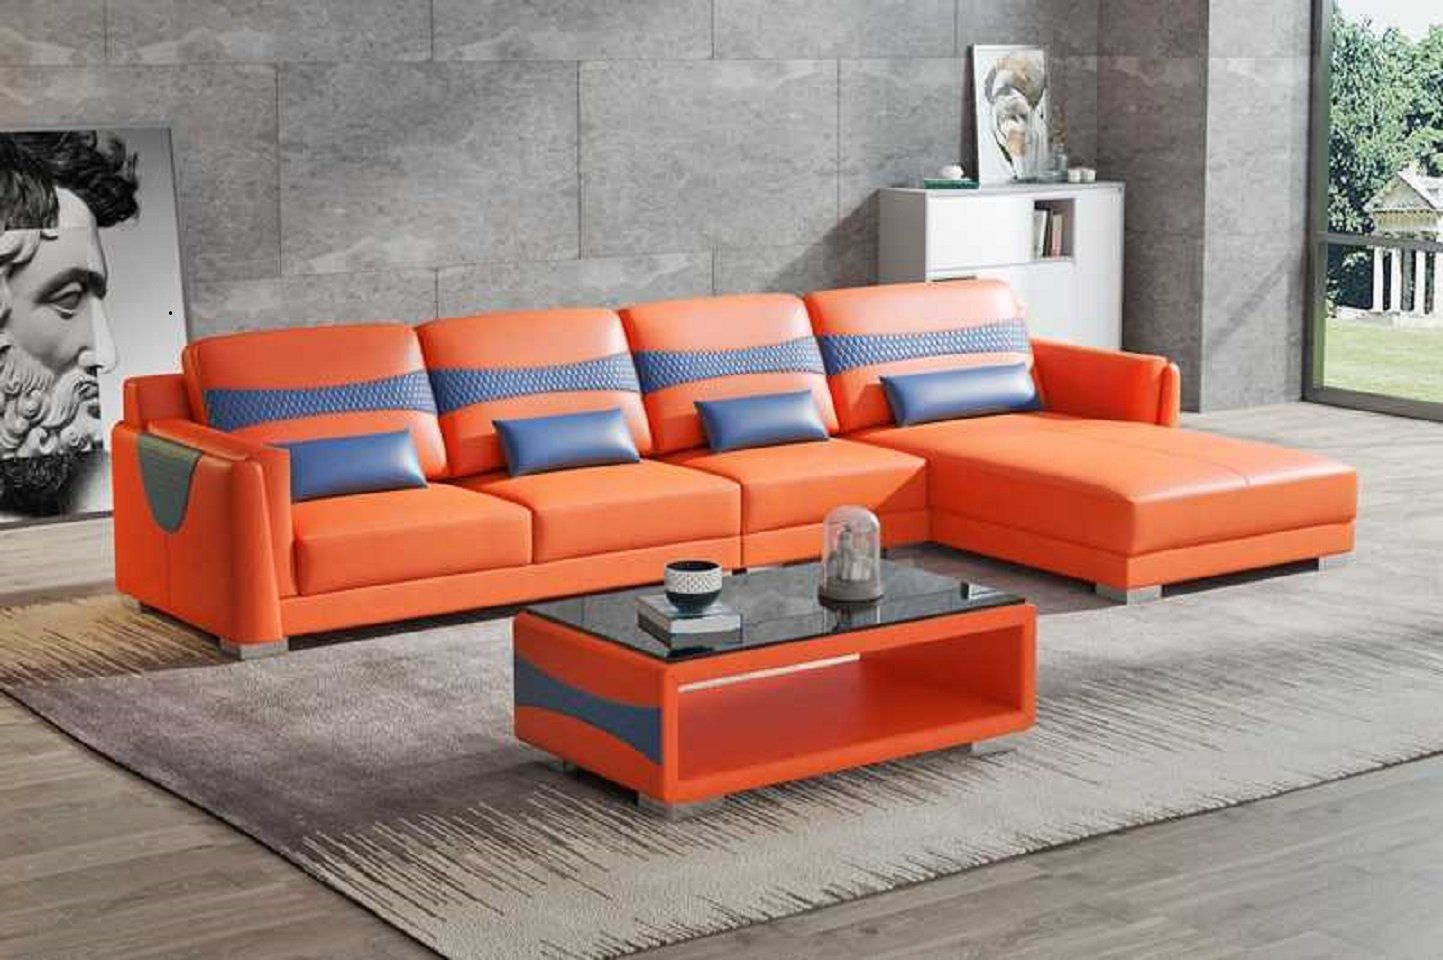 JVmoebel Ecksofa 3 Teile, Form Couch Eckgarnitur Ecksofa Luxus in L Europe Made Wohnzimmer Neu, Orange/Blau Sofa Liege